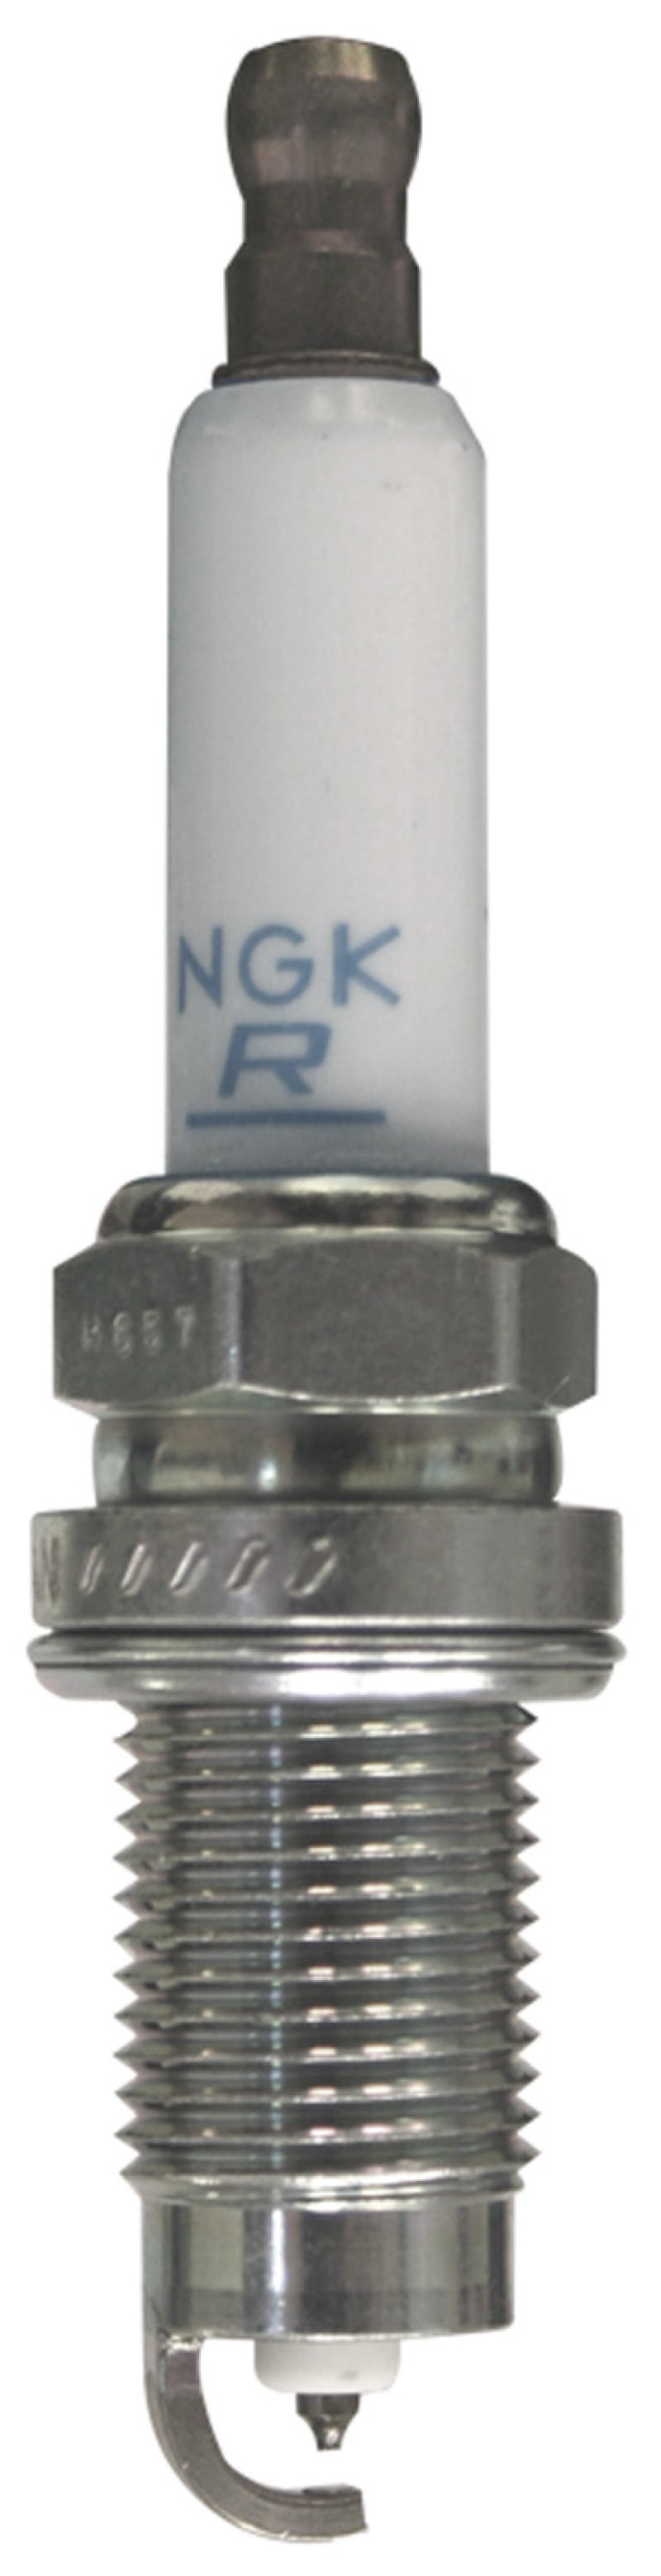 NGK Laser Platinum Spark Plug Box of 4 (PZFR5Q-11)